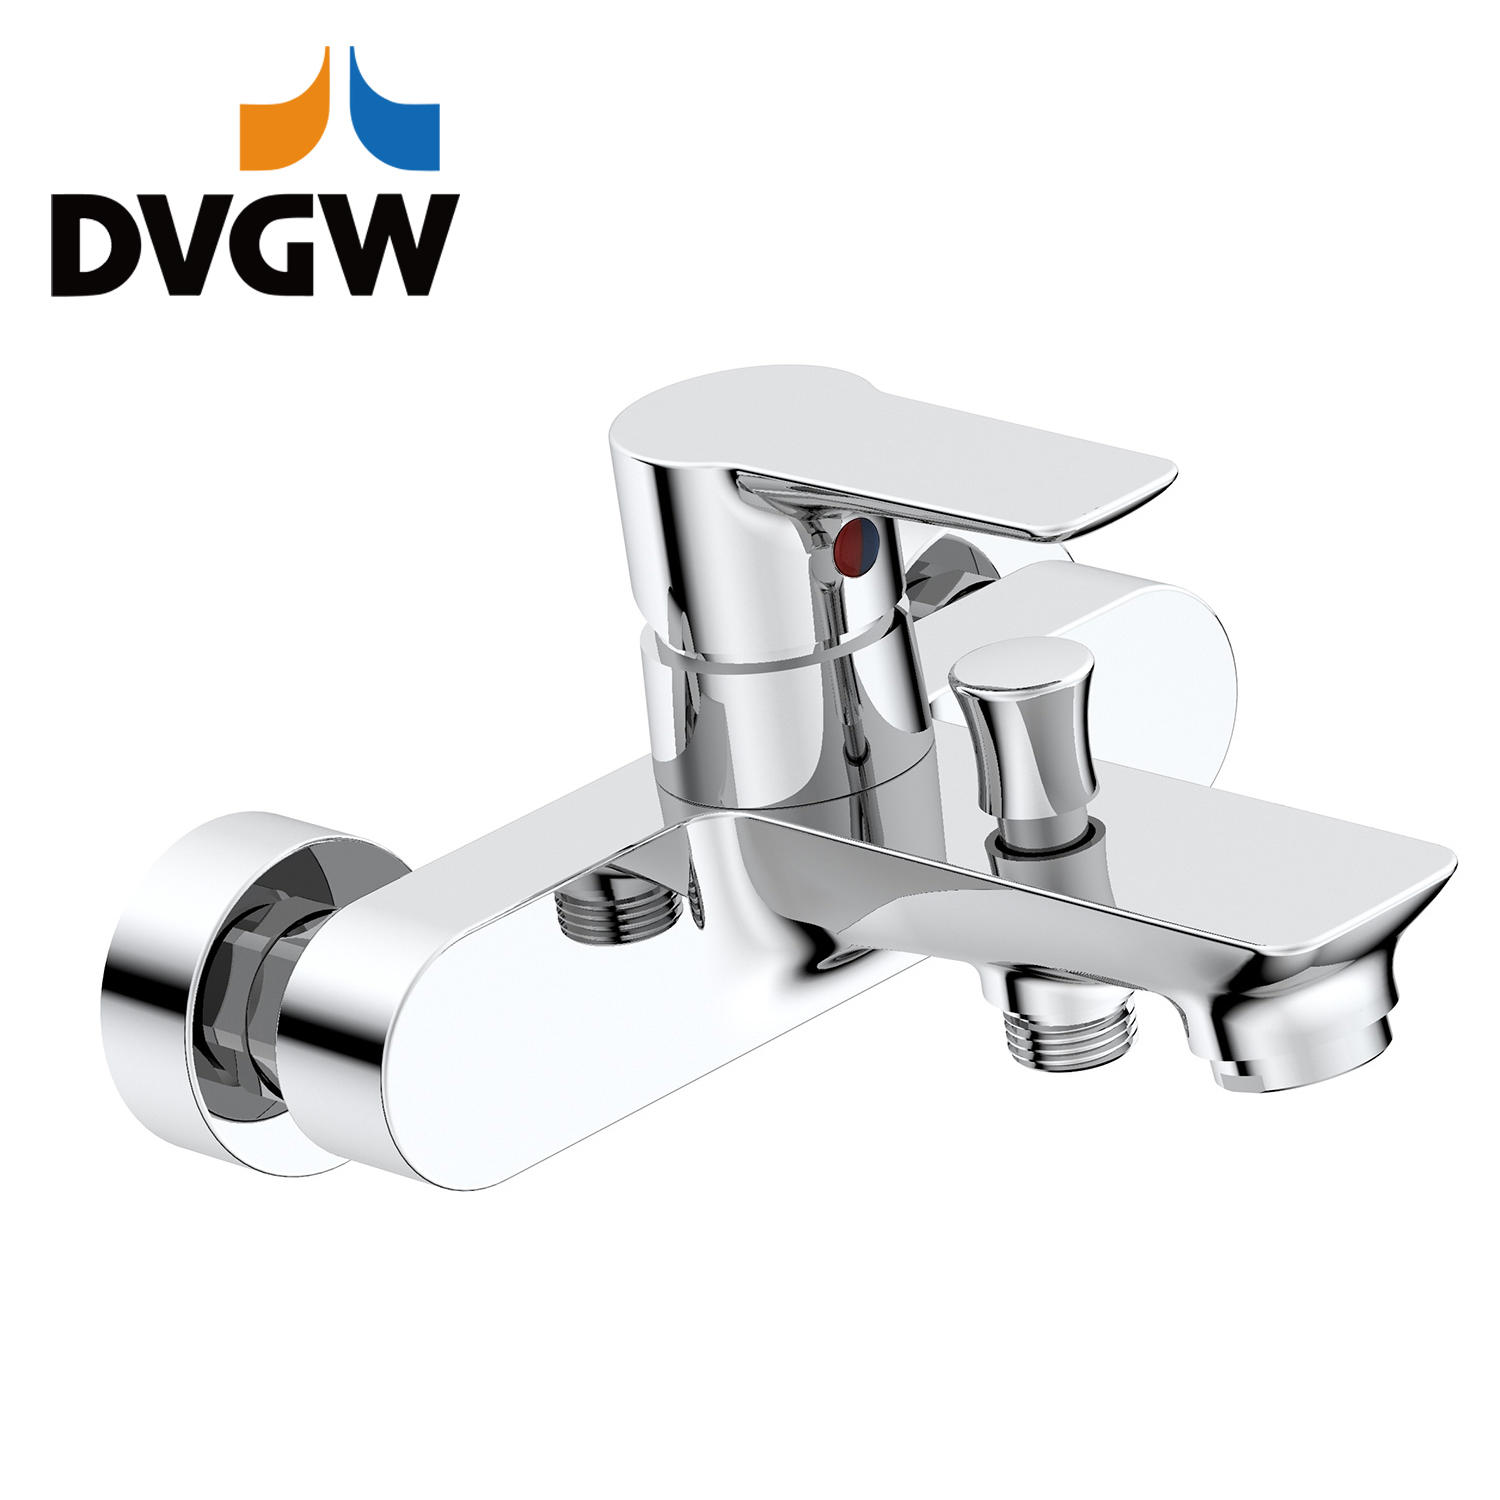 3187-10 DVGW certificada, torneira de latão monocomando monocomando para banheira de água quente / fria na parede